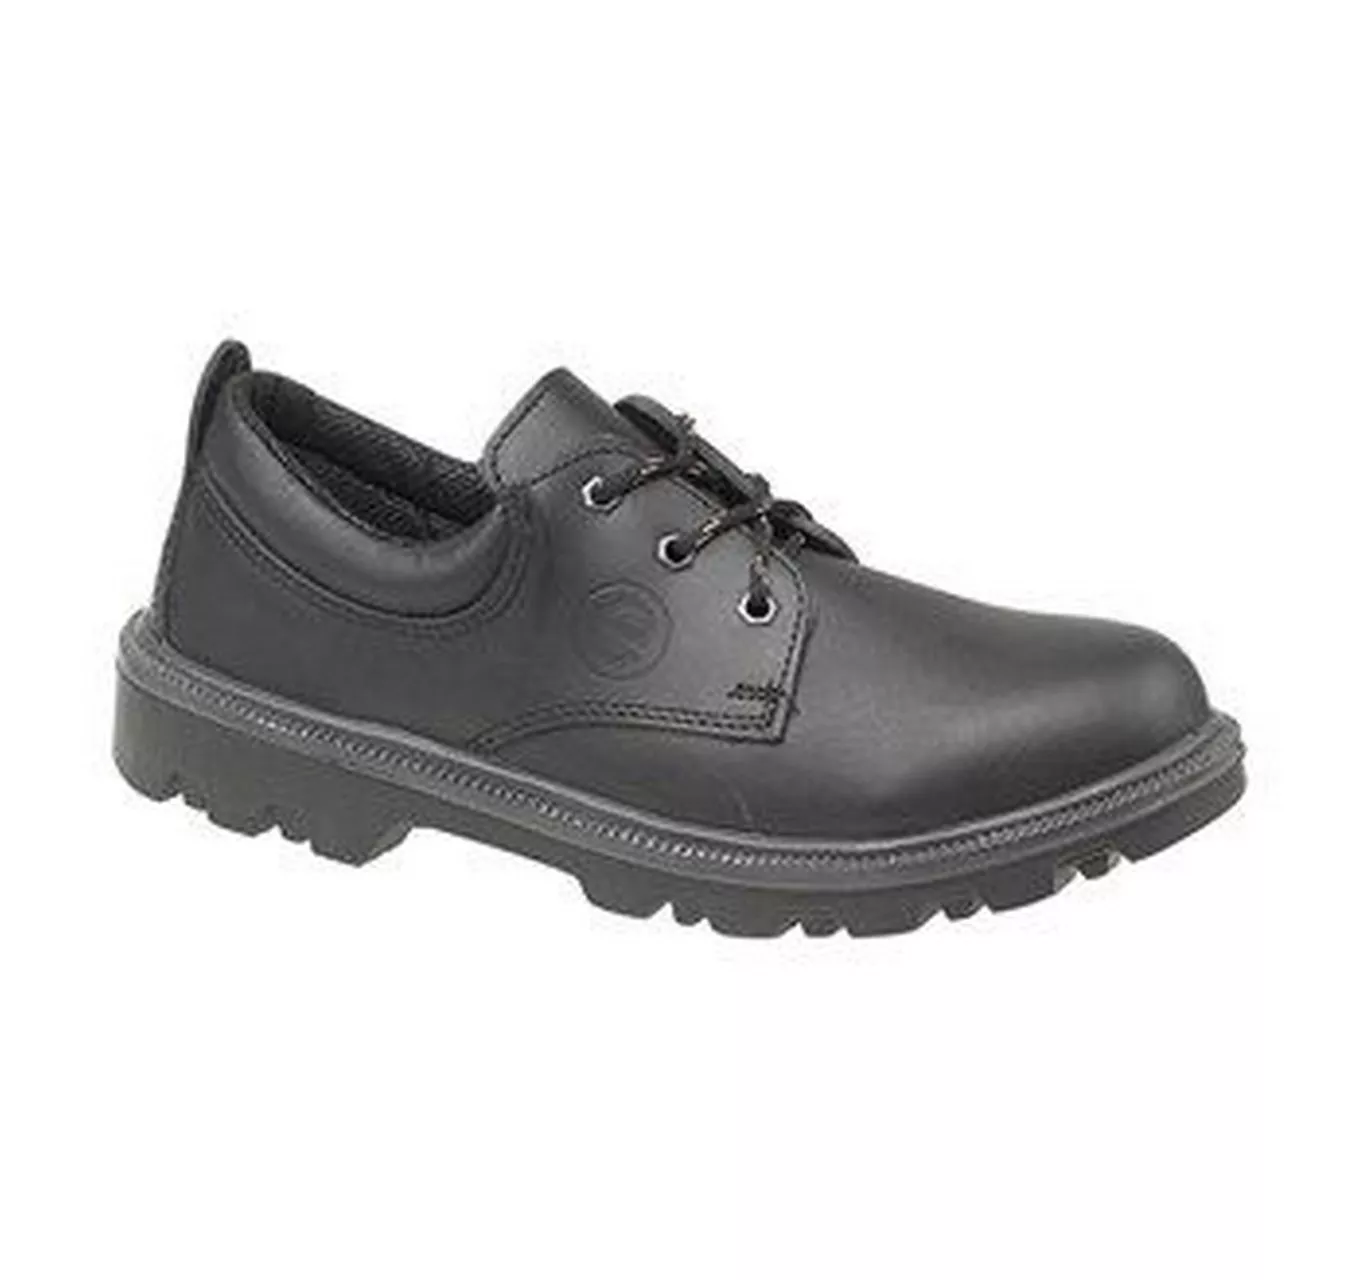 FS133 Extra Fit Safety Shoe Black